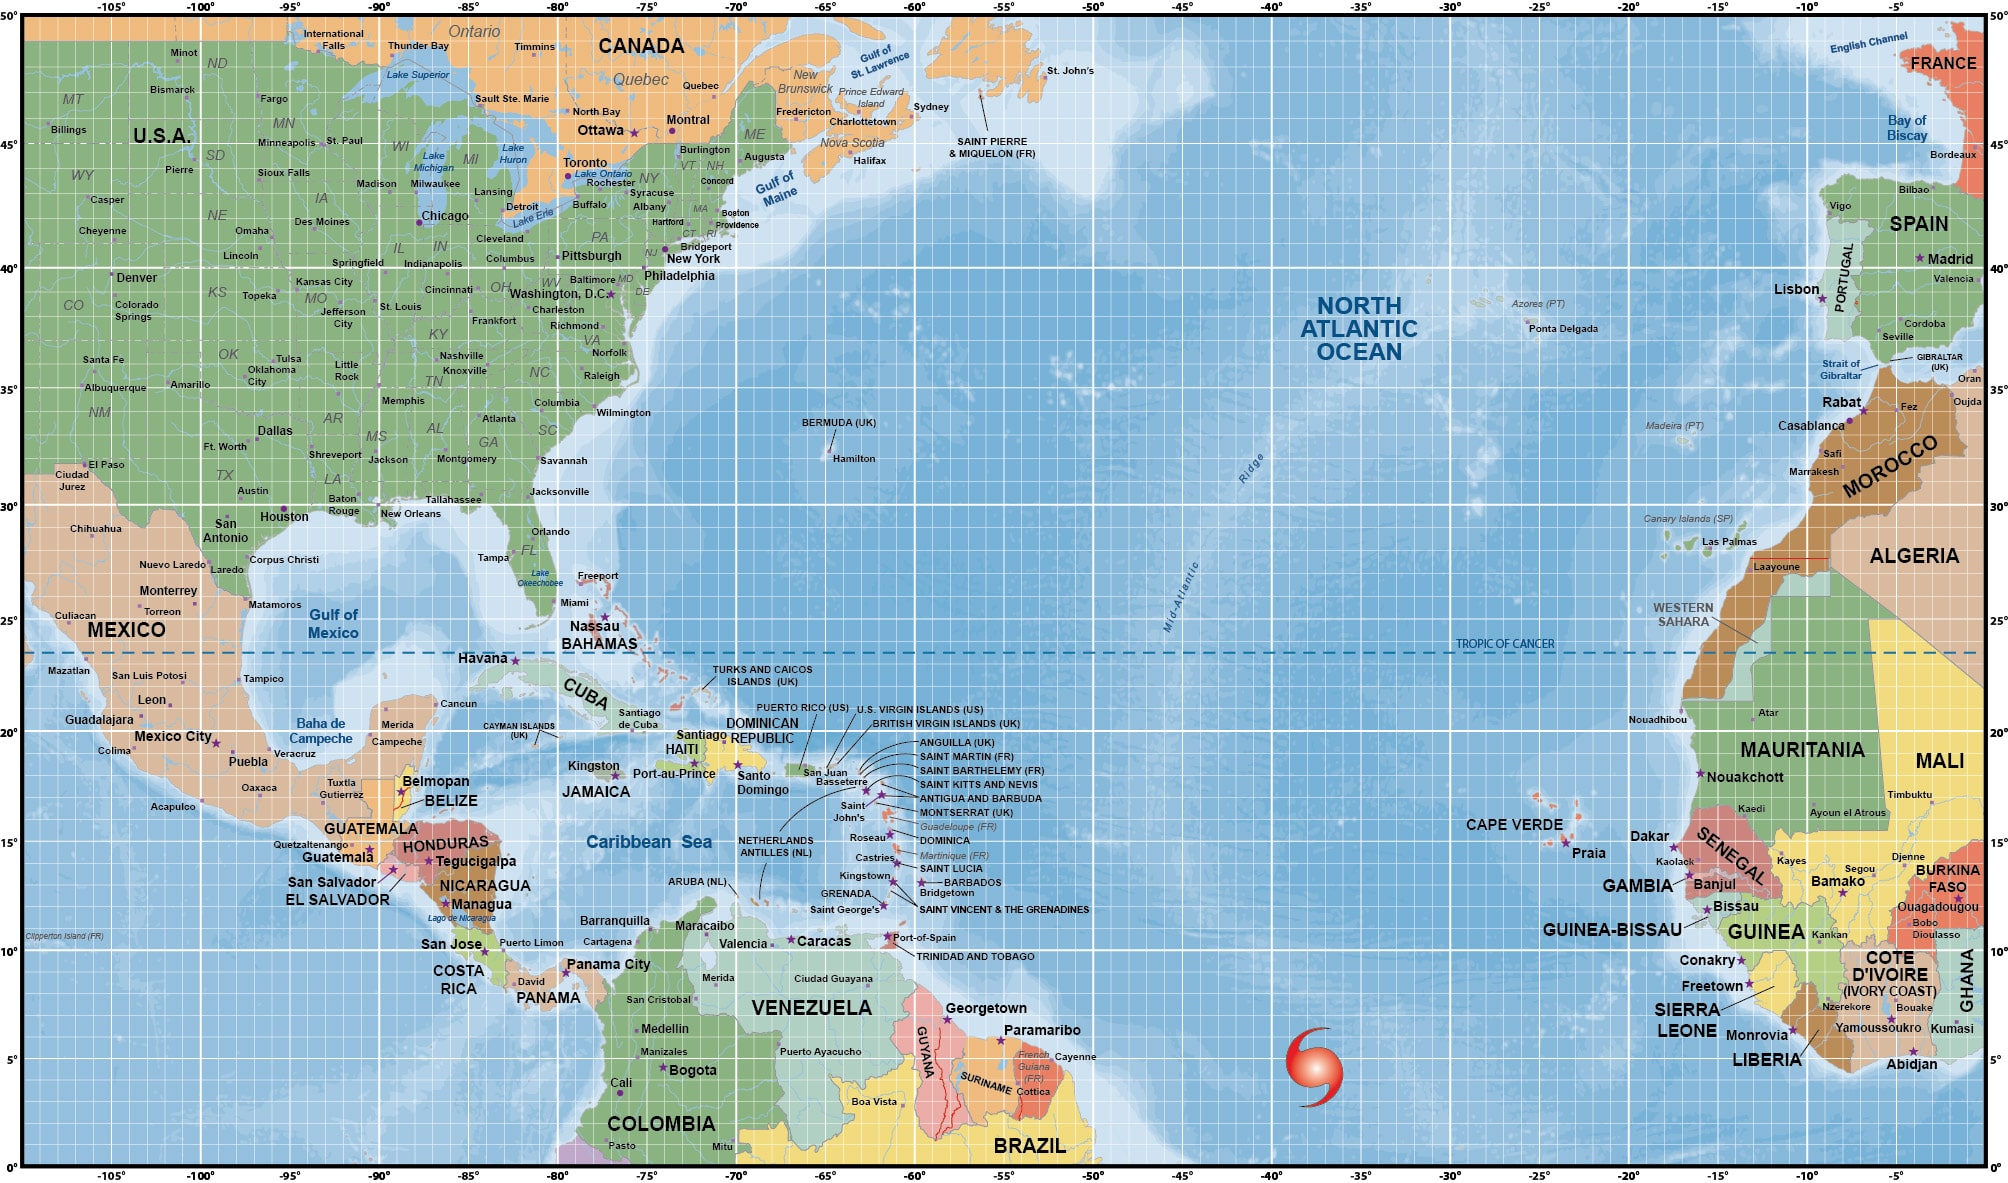 Atlantic Ocean Images Map 